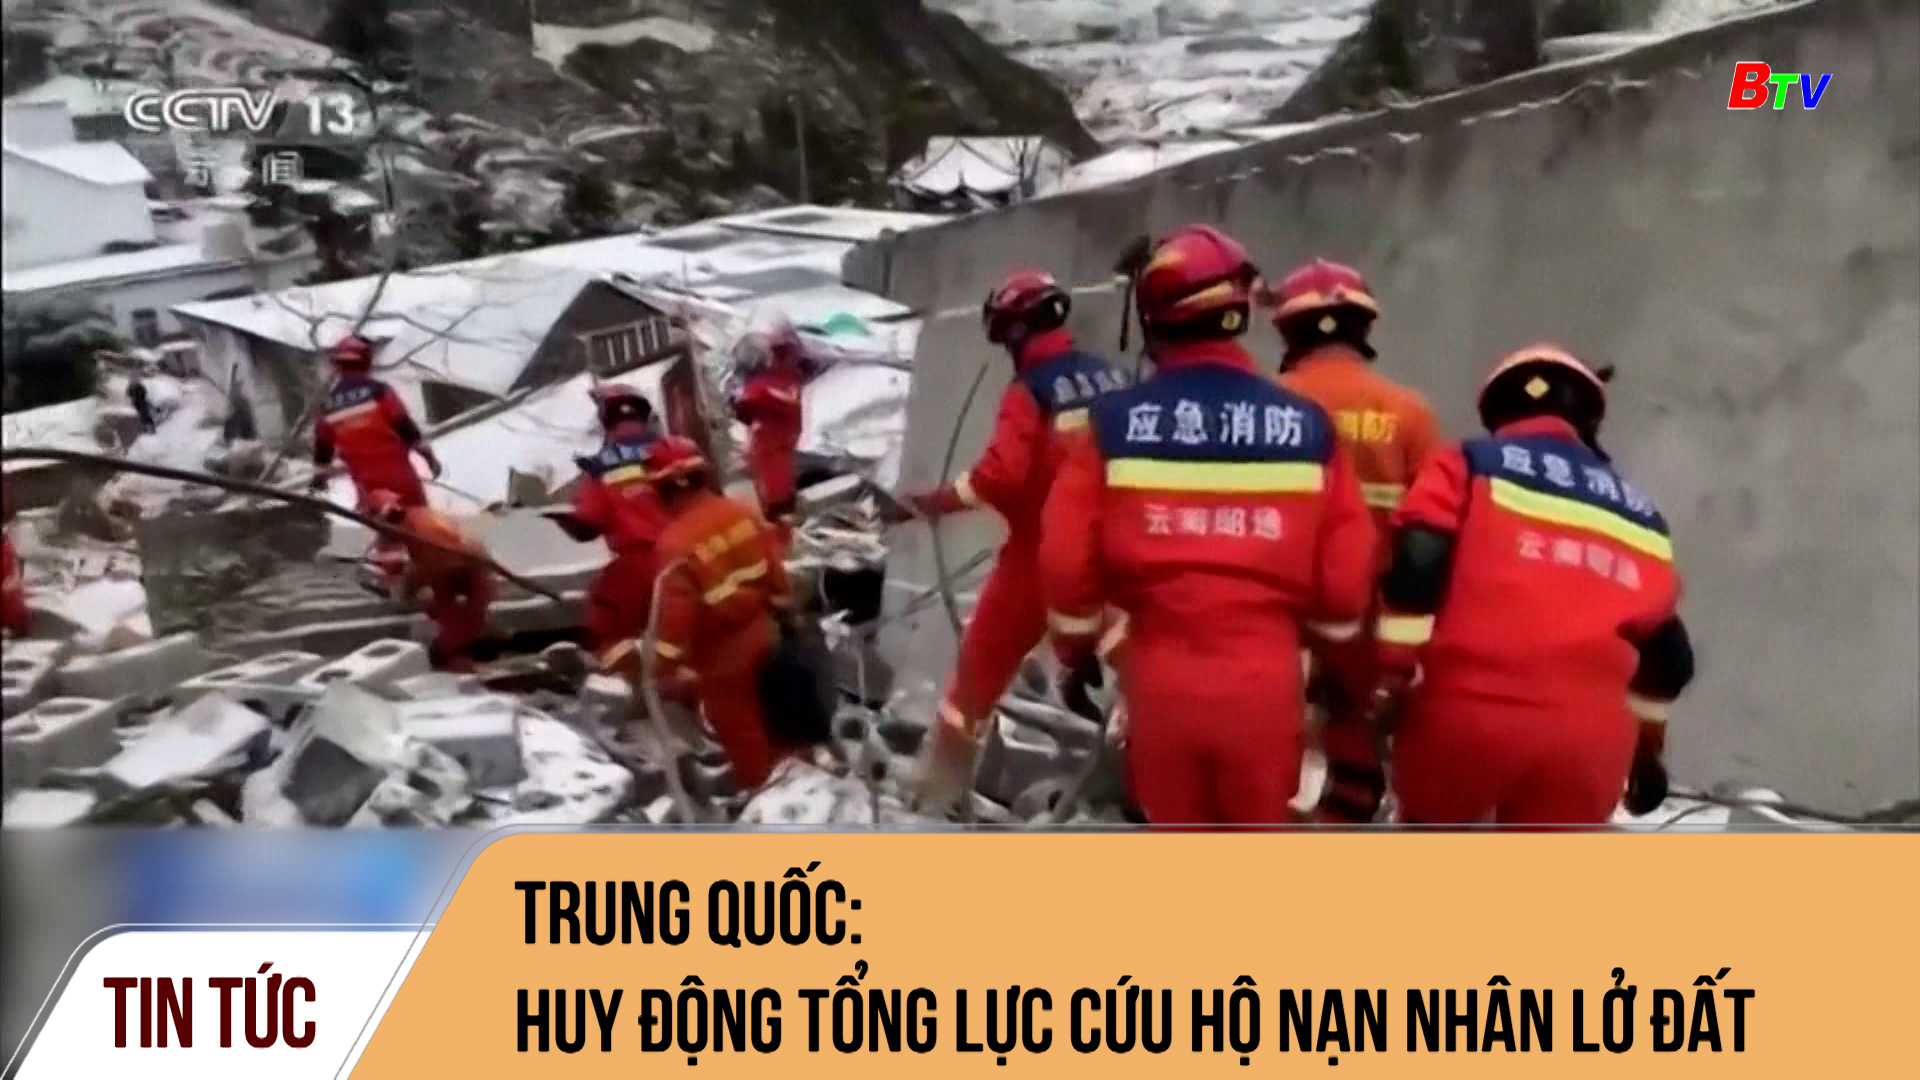 Trung Quốc: Huy động tổng lực cứu hộ nạn nhân lở đất